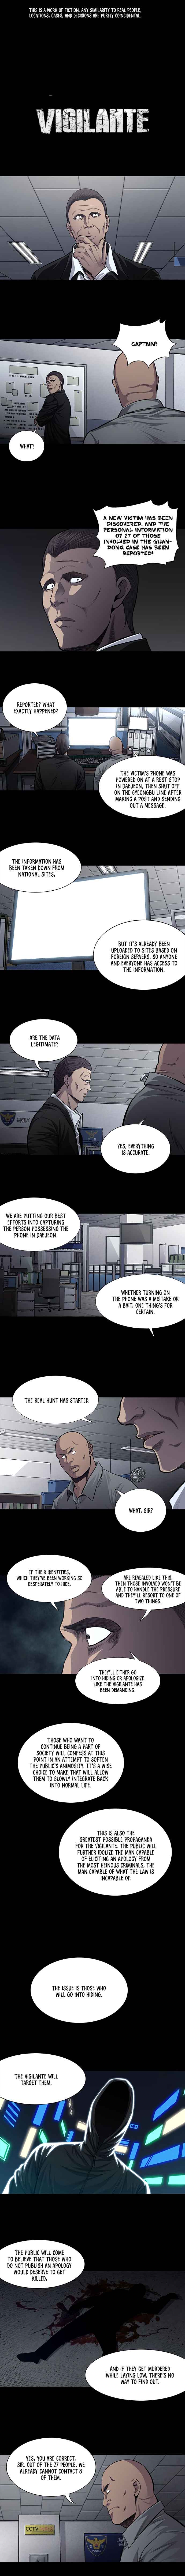 Justice (Vigilante) - Page 1